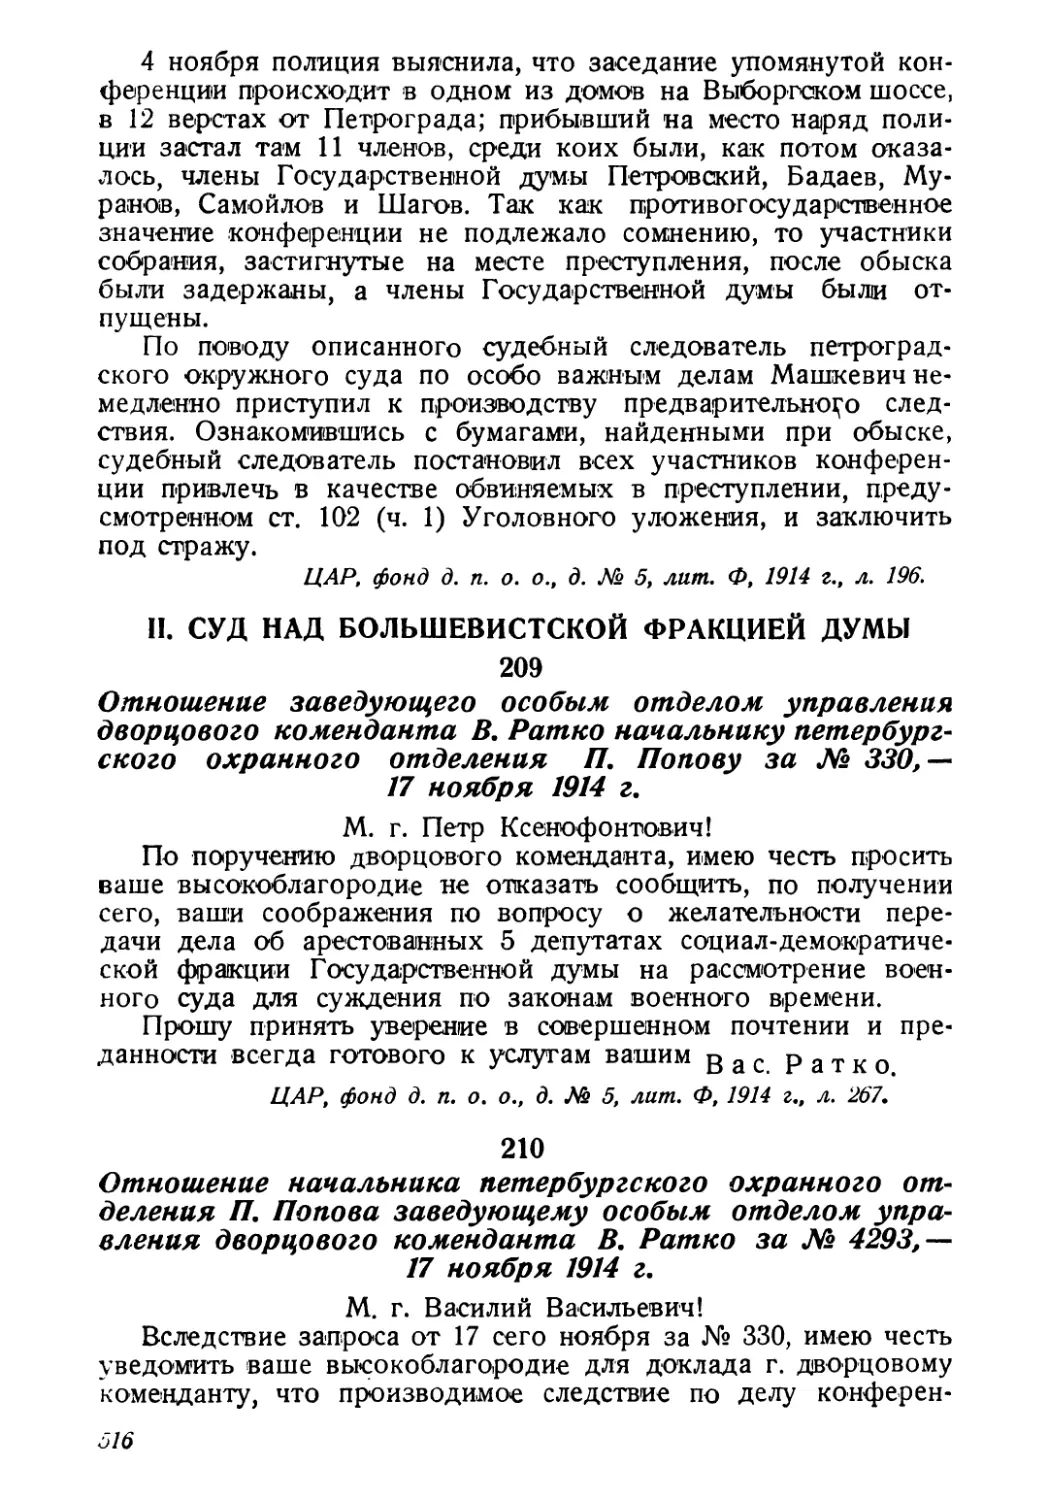 II. Суд над большевистской фракцией Думы